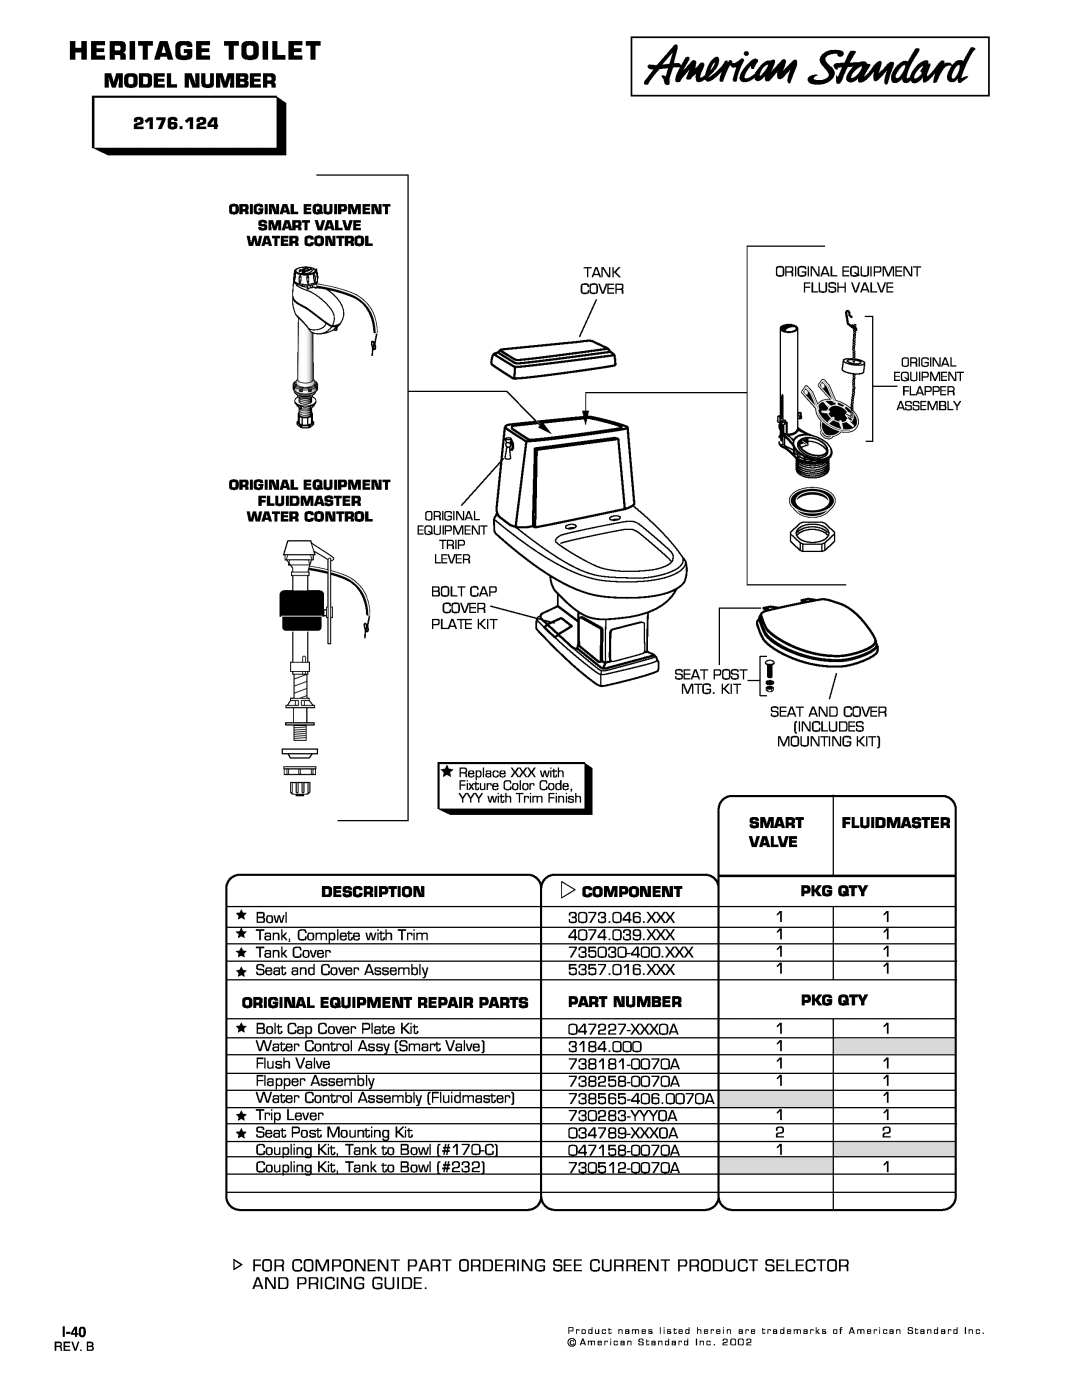 American Standard 2176.124 manual Heritage Toilet, Model Number, Smart, Fluidmaster, Valve, Description, Component, I-40 